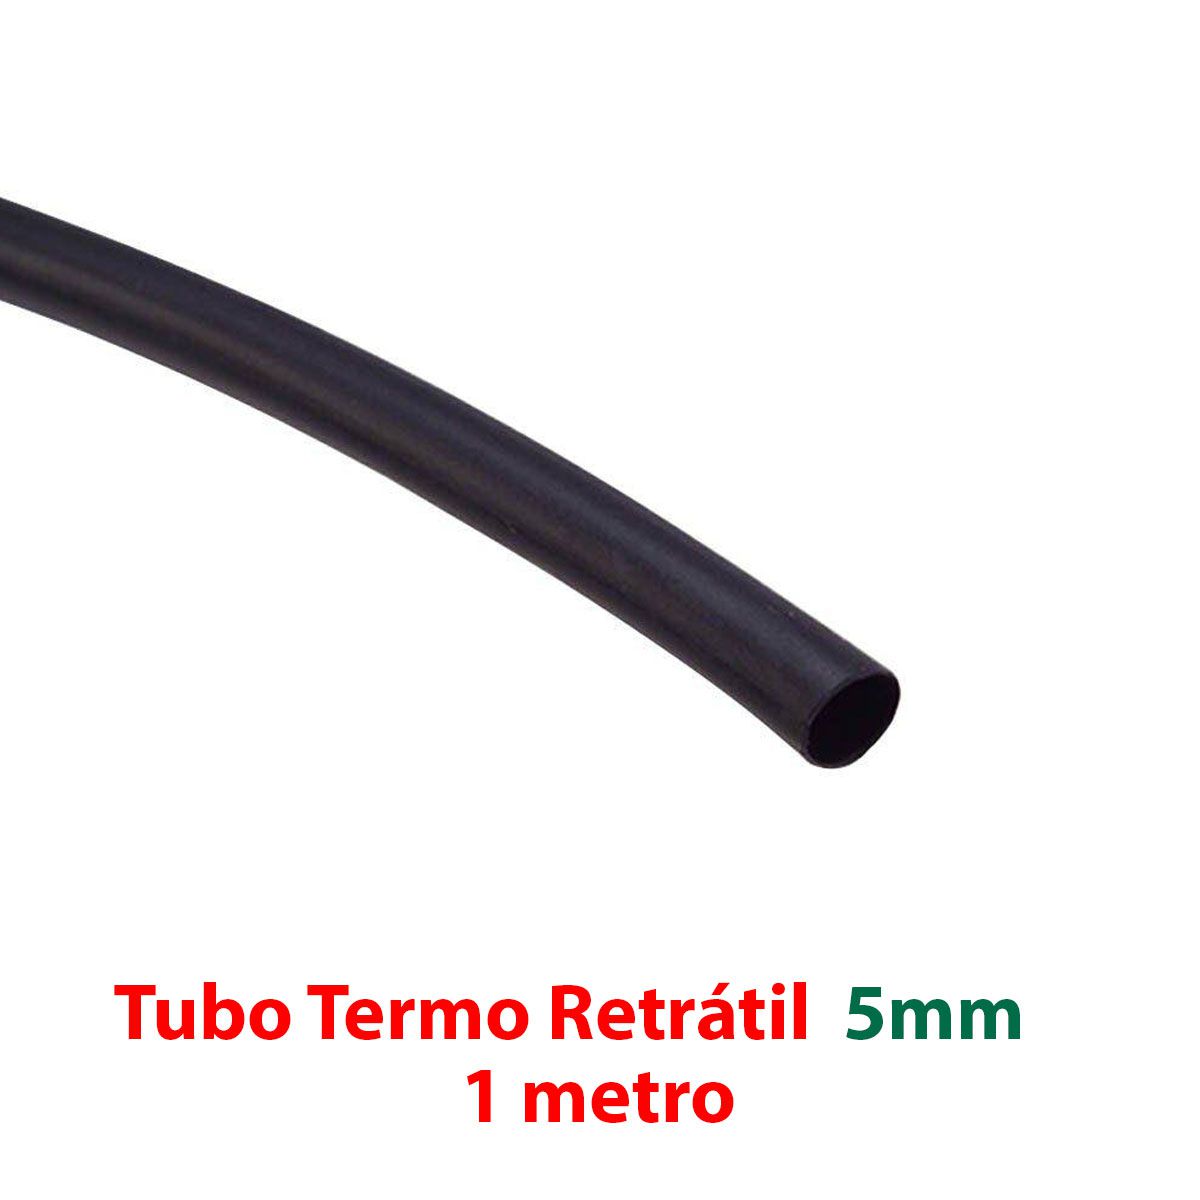 Soprador Térmico HK-509 220V - Hikari + Kit Espaguete isolante / Tubo termo retrátil